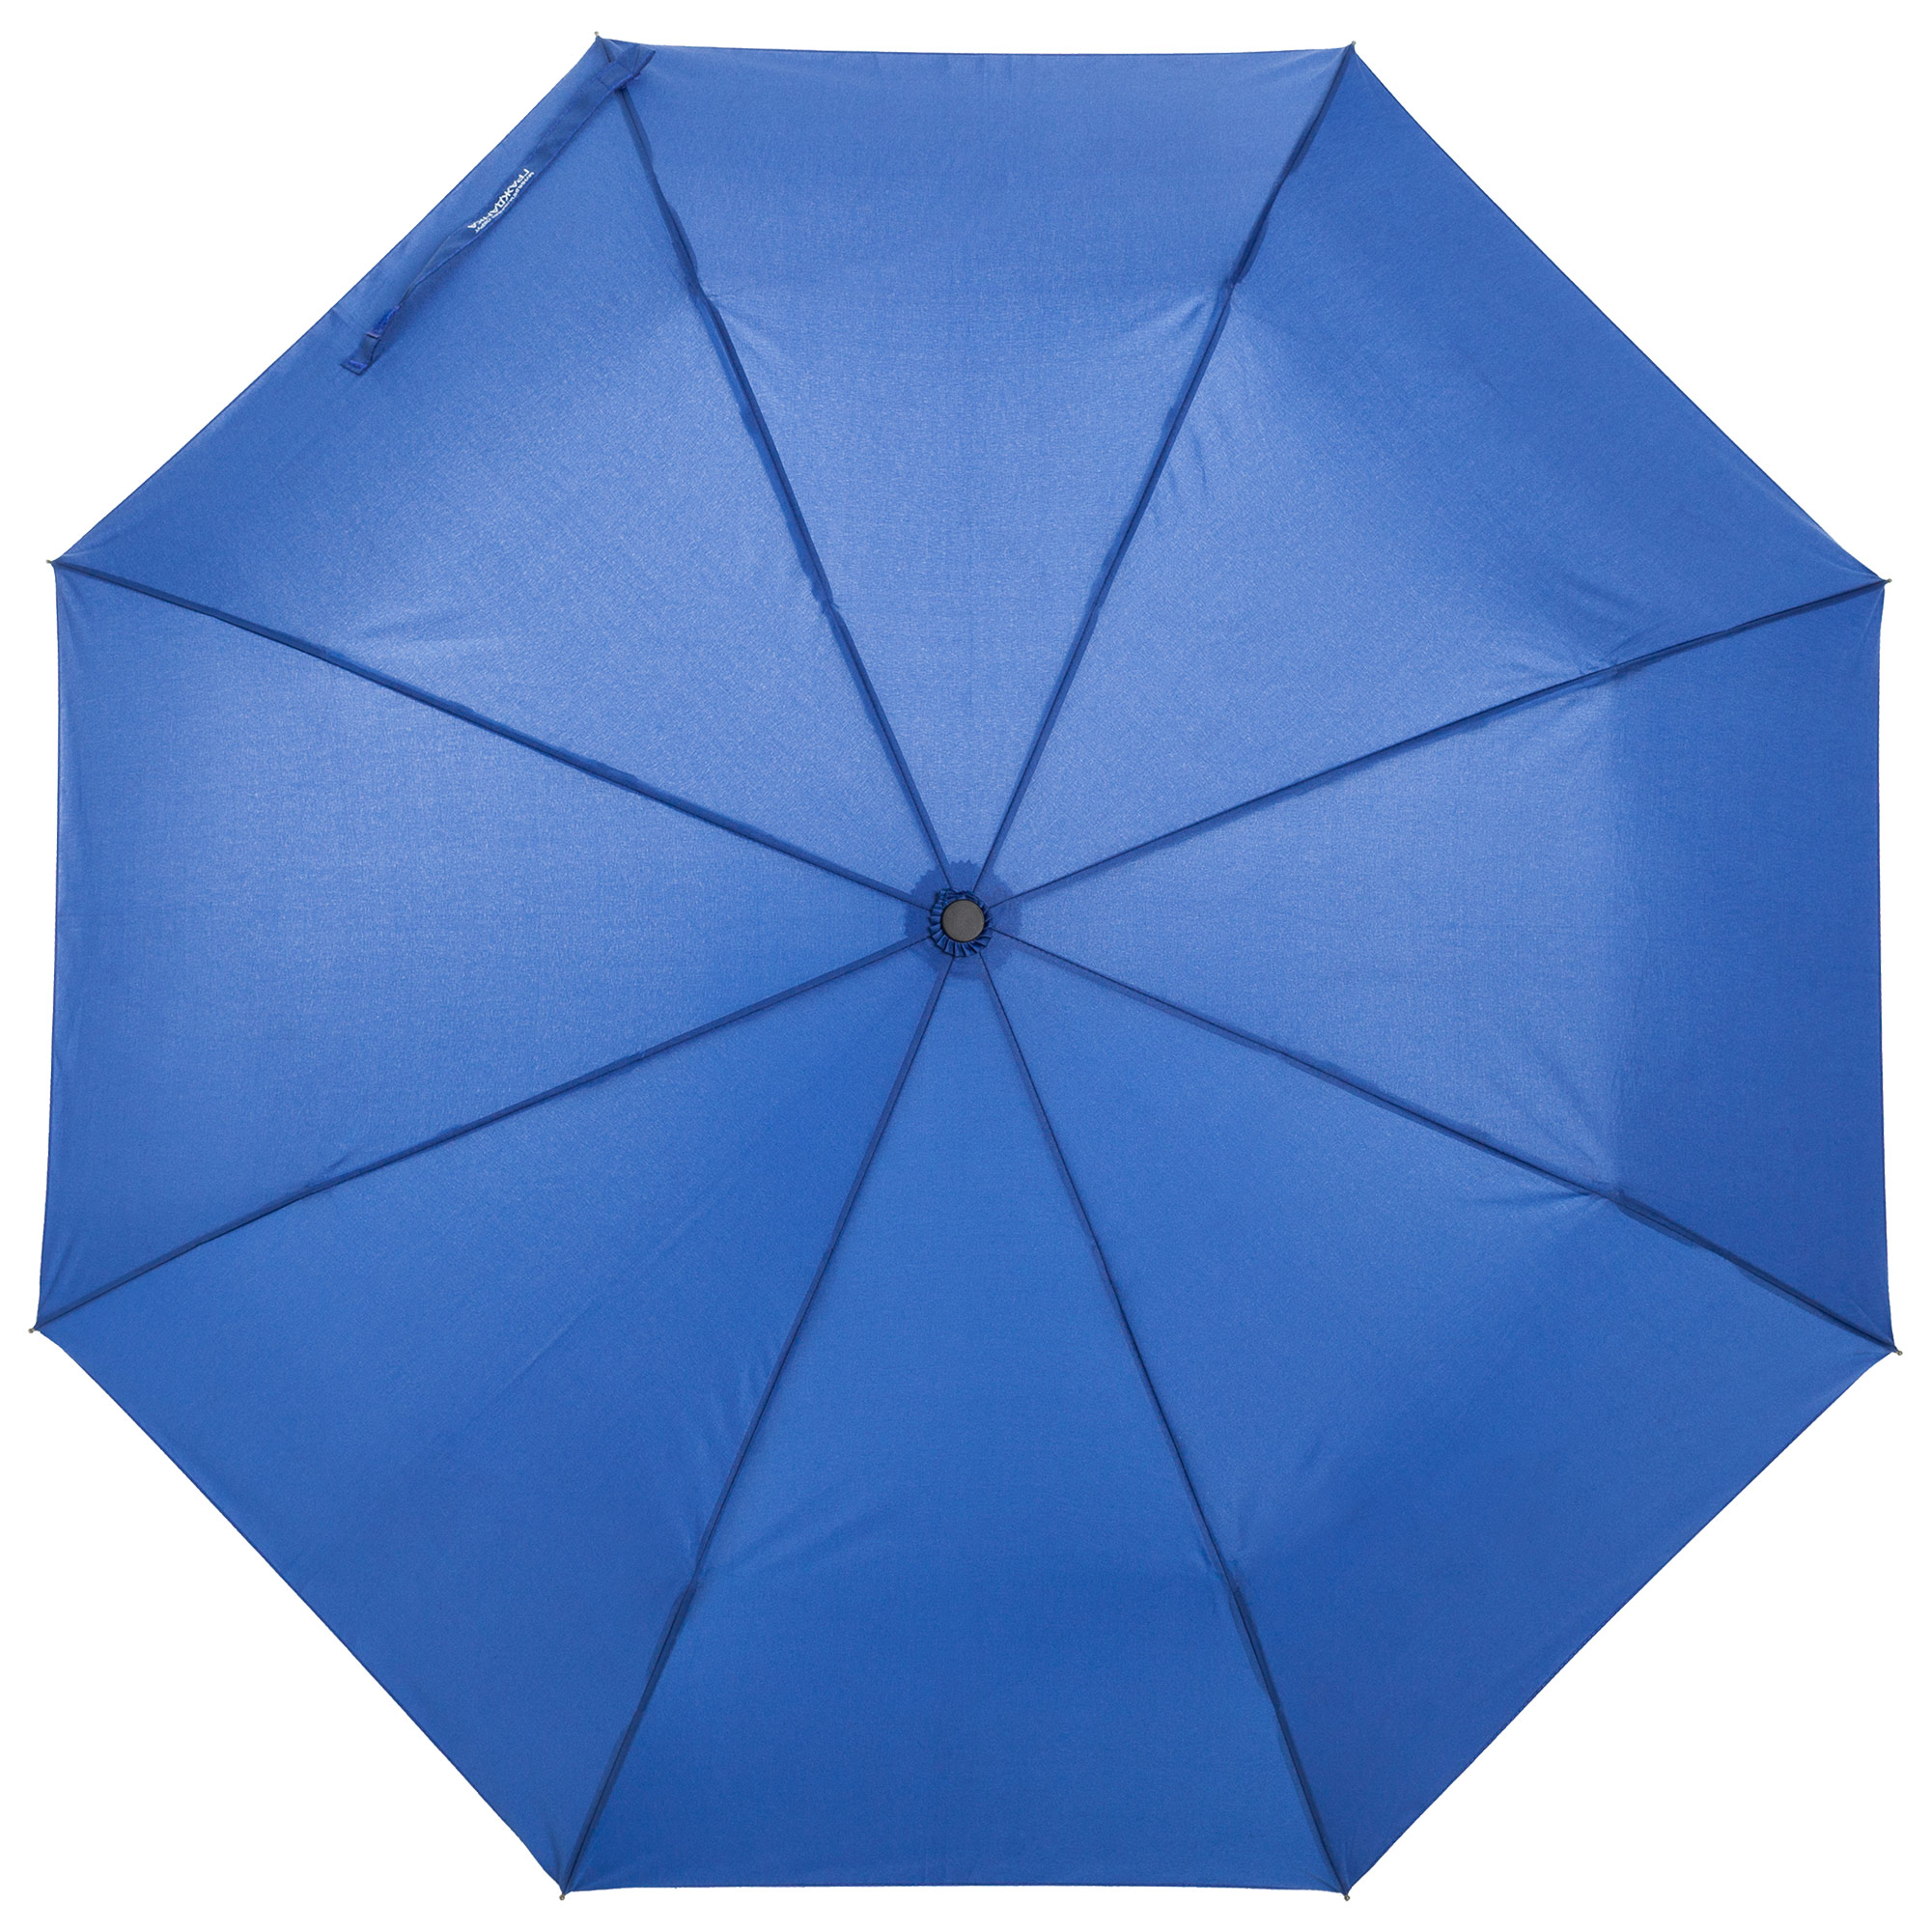 Пример зонта с печатью проявляющегося изображения